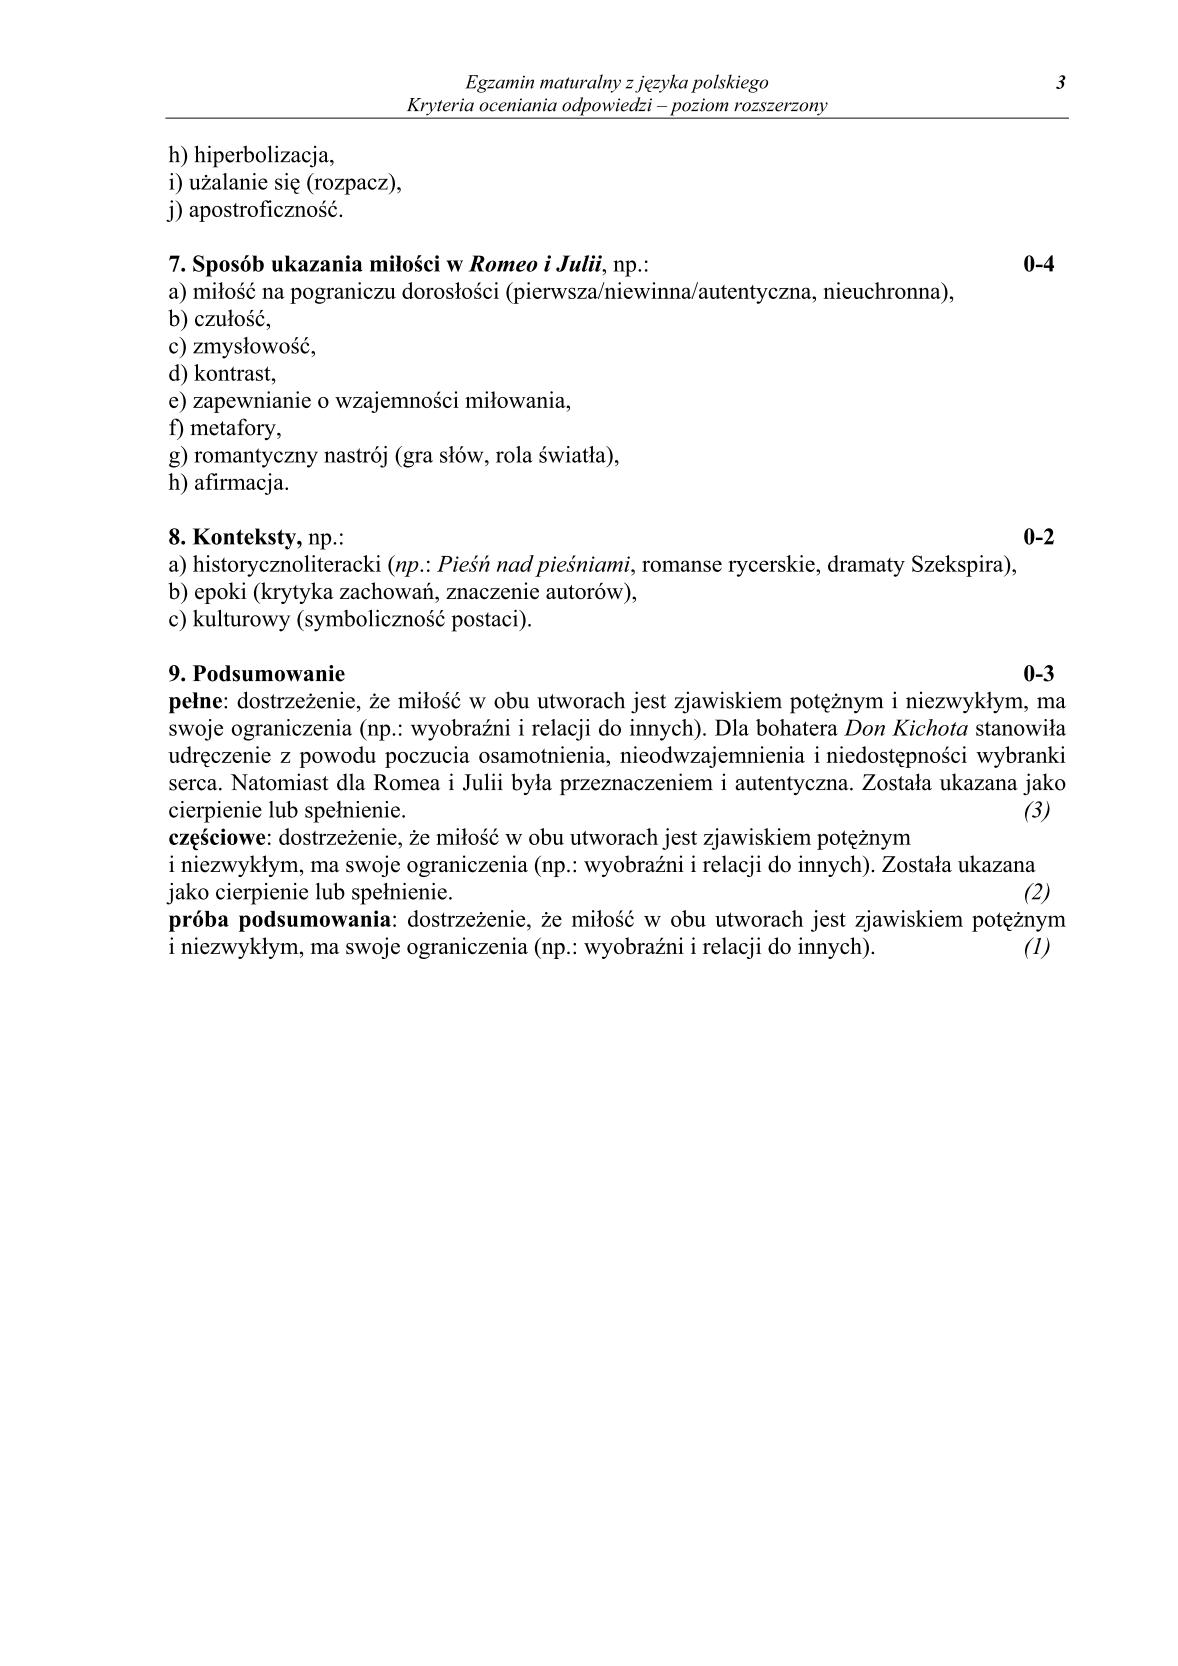 odpowiedzi-jezyk-polski-poziom-rozszerzony-matura-2014-str.3